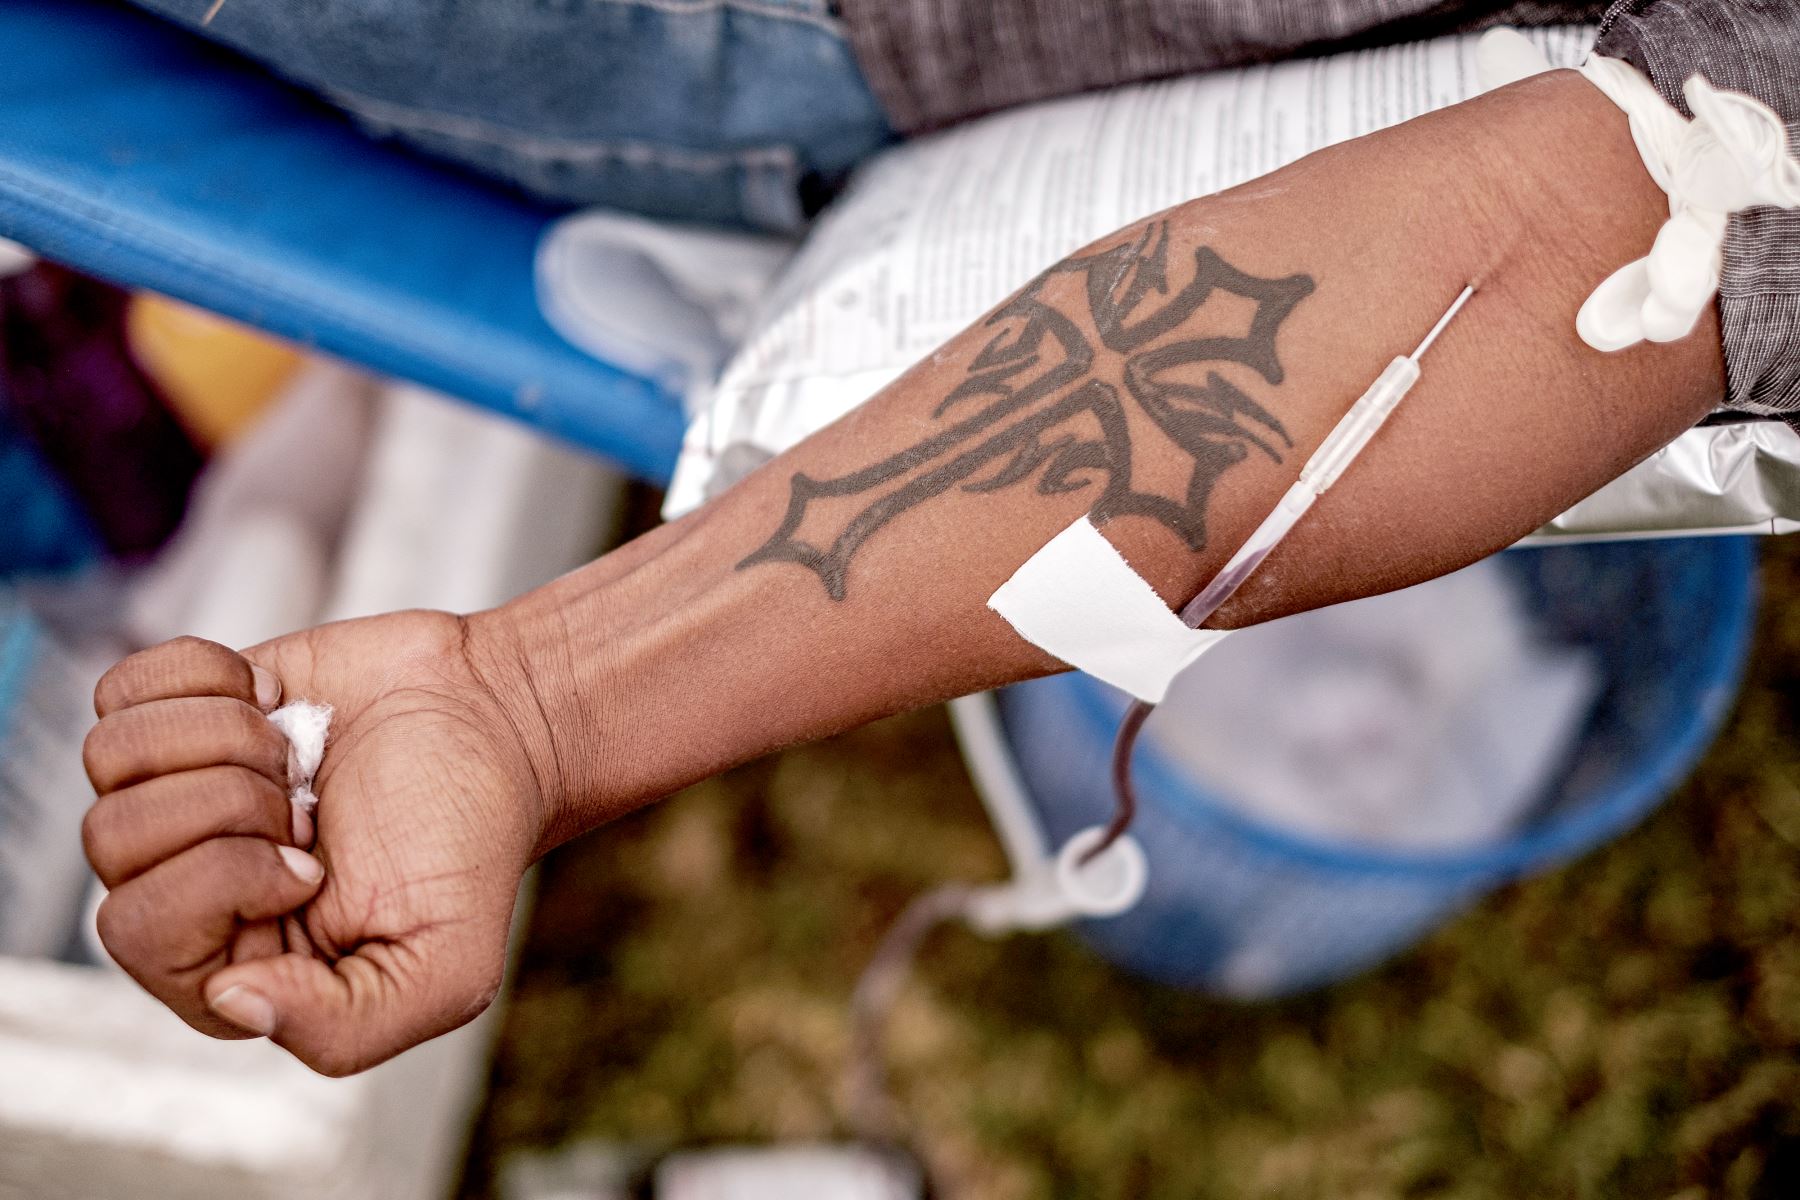 La normativa vigente en el país sudamericano excluía de las donaciones a los homosexuales por supuestamente tratarse de una población de mayor riesgo de exposición al VIH. Foto: AFP